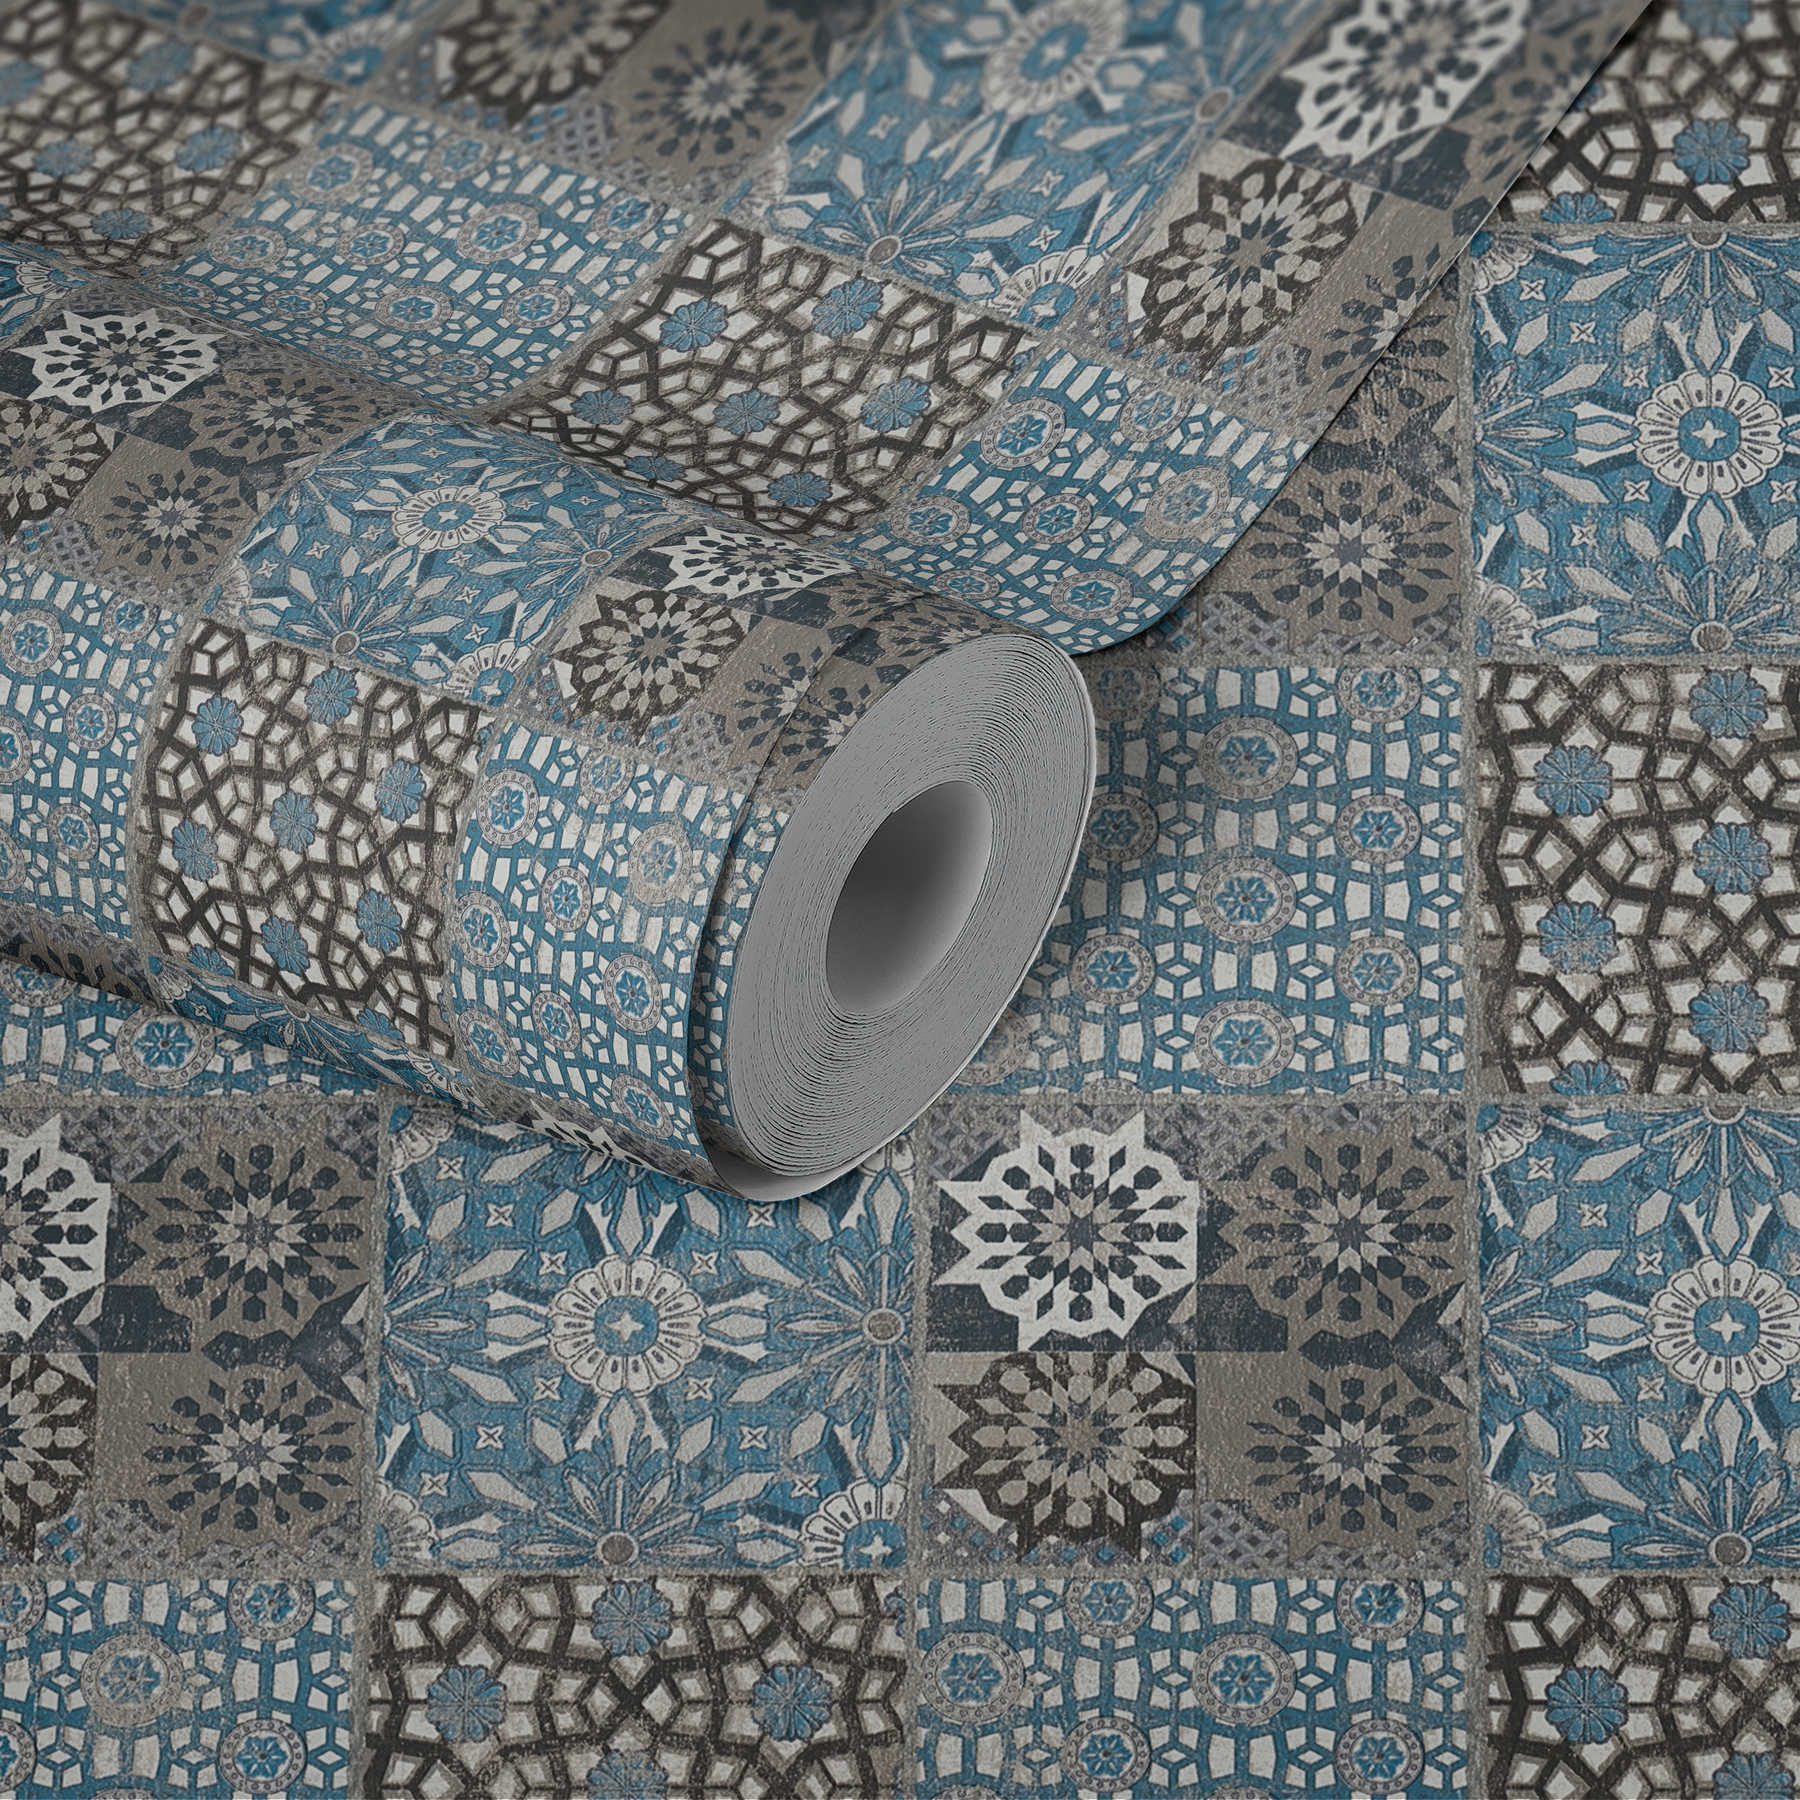             Fliesen Tapete mit Retro-Muster & Used-Optik – Blau, Grau
        